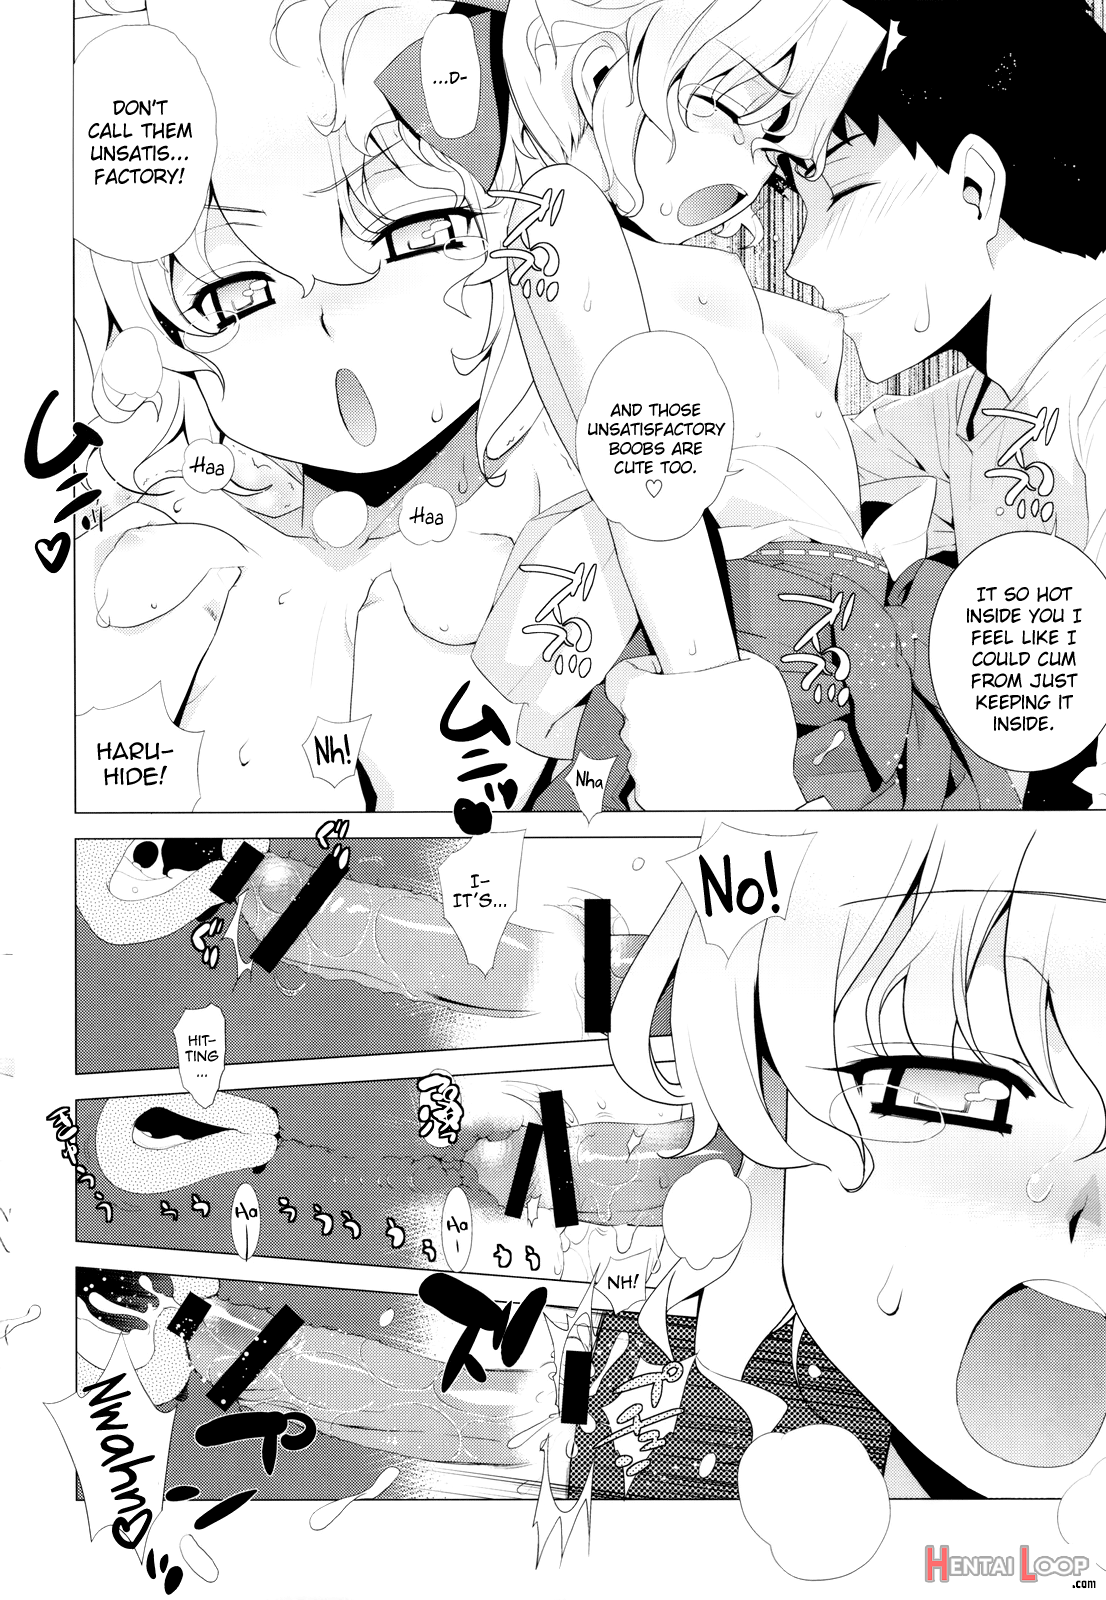 Kanara-sama No Nichijou San + Shiori page 16